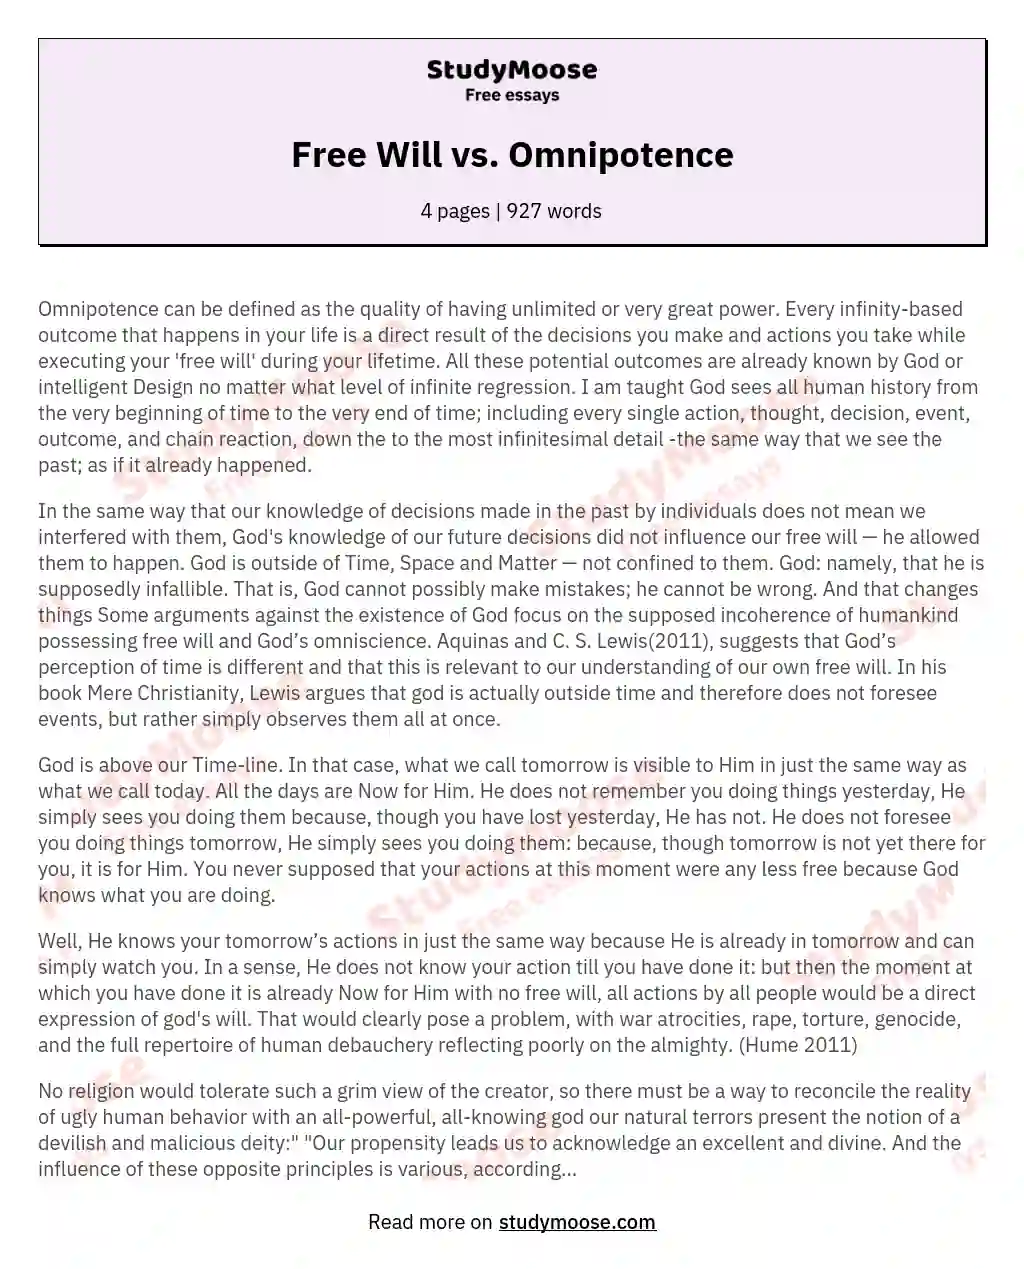 Free Will vs. Omnipotence essay